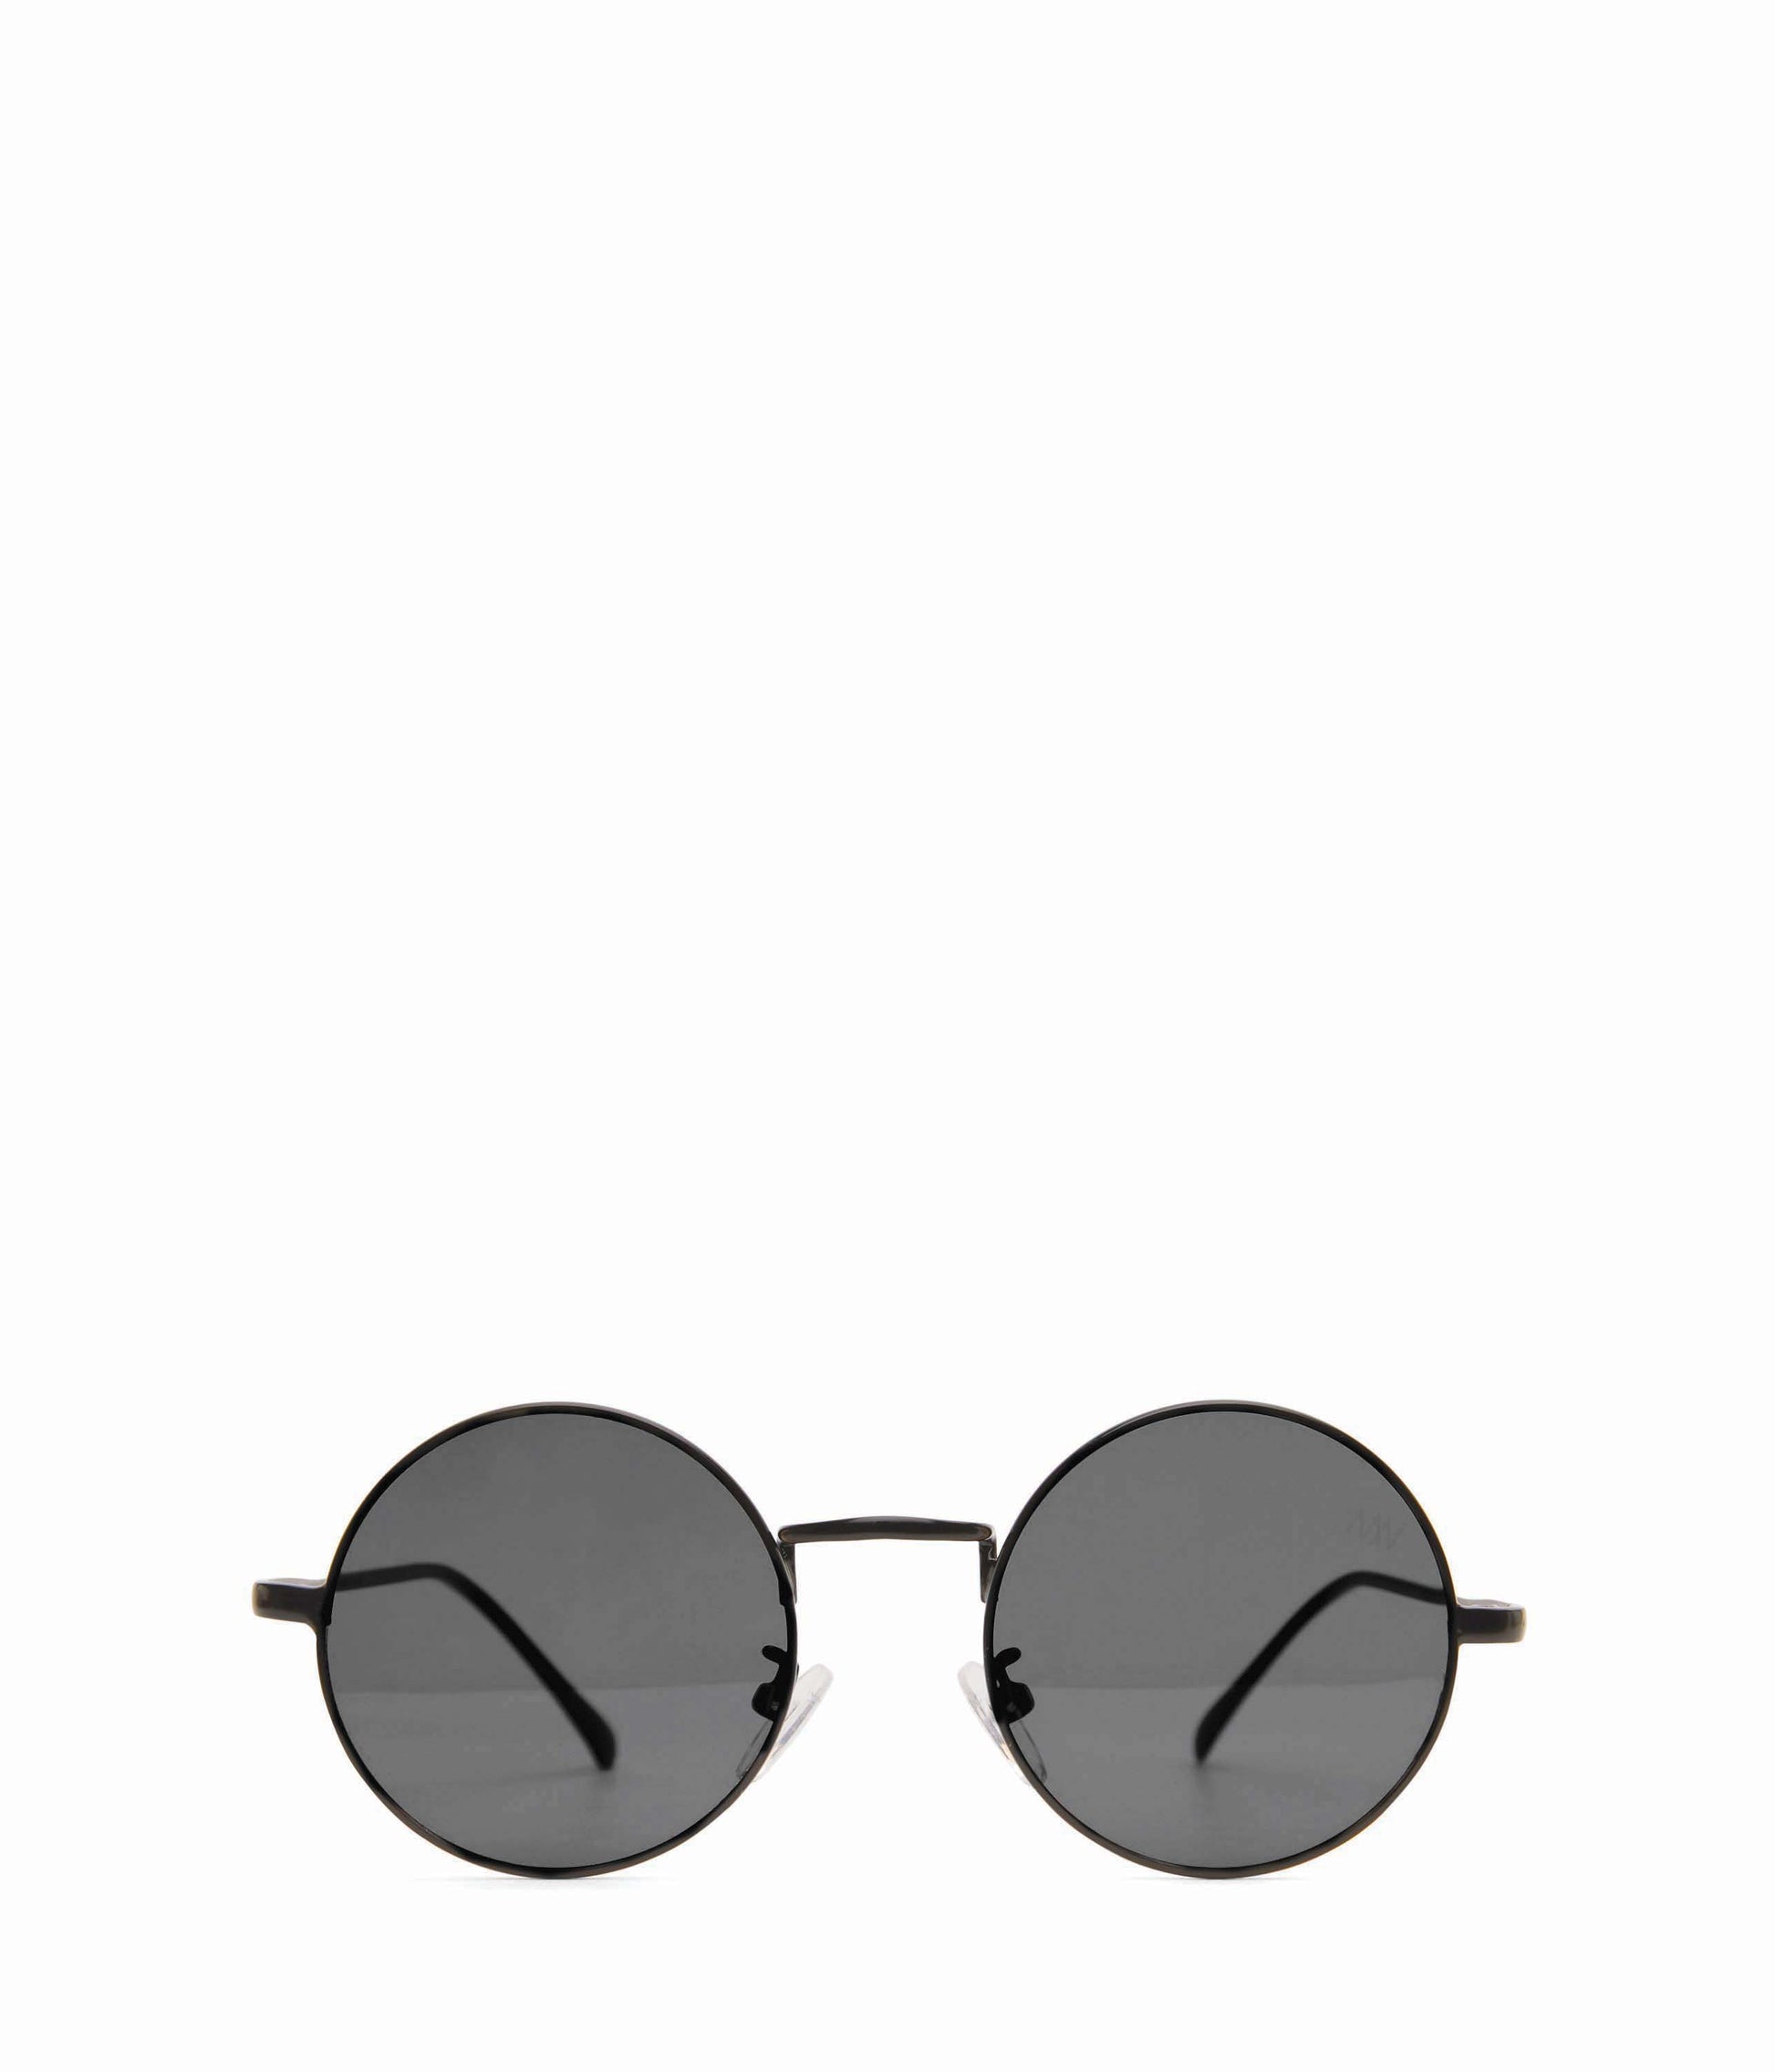 Miu Miu small oval black sunglasses